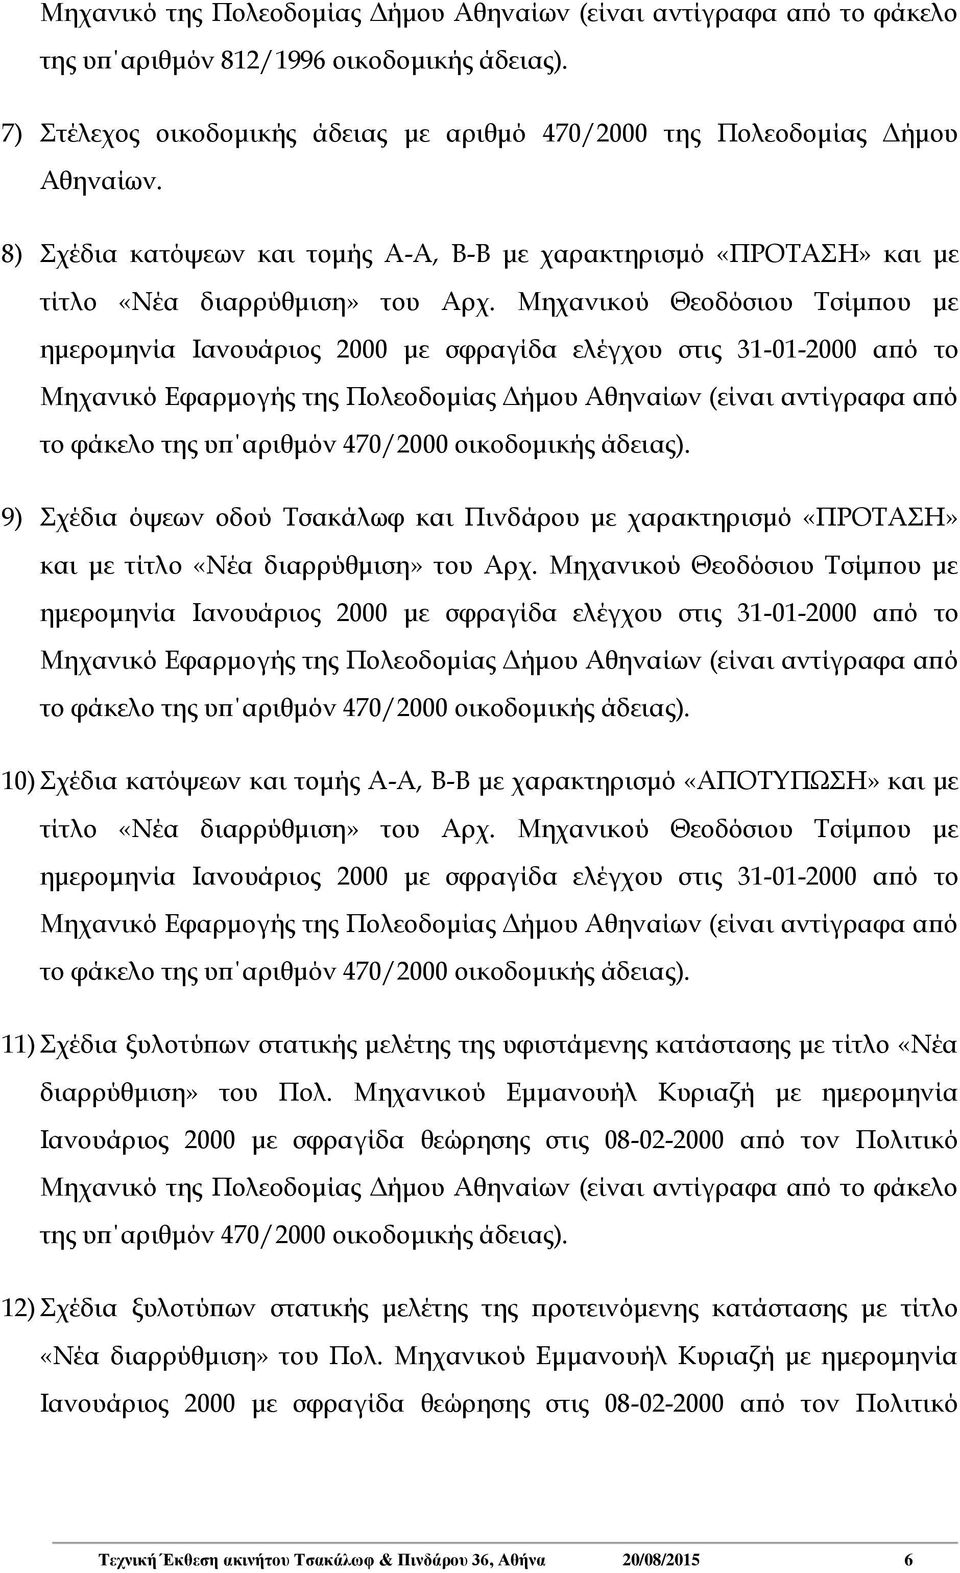 Μηχανικού Θεοδόσιου Τσίμπου με ημερομηνία Ιανουάριος 2000 με σφραγίδα ελέγχου στις 31-01-2000 από το Μηχανικό Εφαρμογής της Πολεοδομίας Δήμου Αθηναίων (είναι αντίγραφα από το φάκελο της υπ αριθμόν